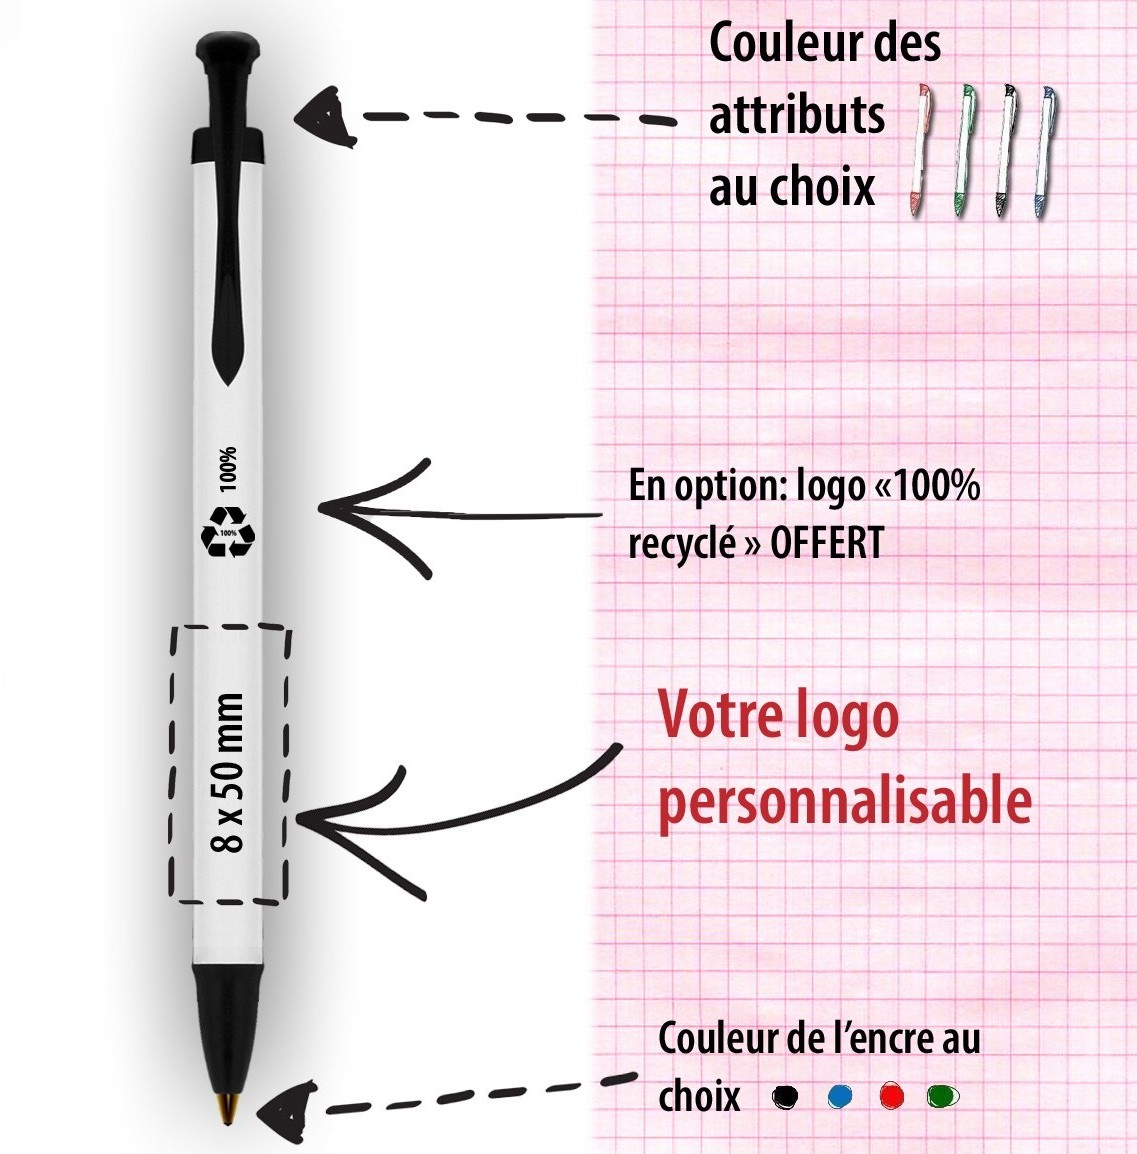 Promotion et prix du stylo: écologique, recyclé et Made In France